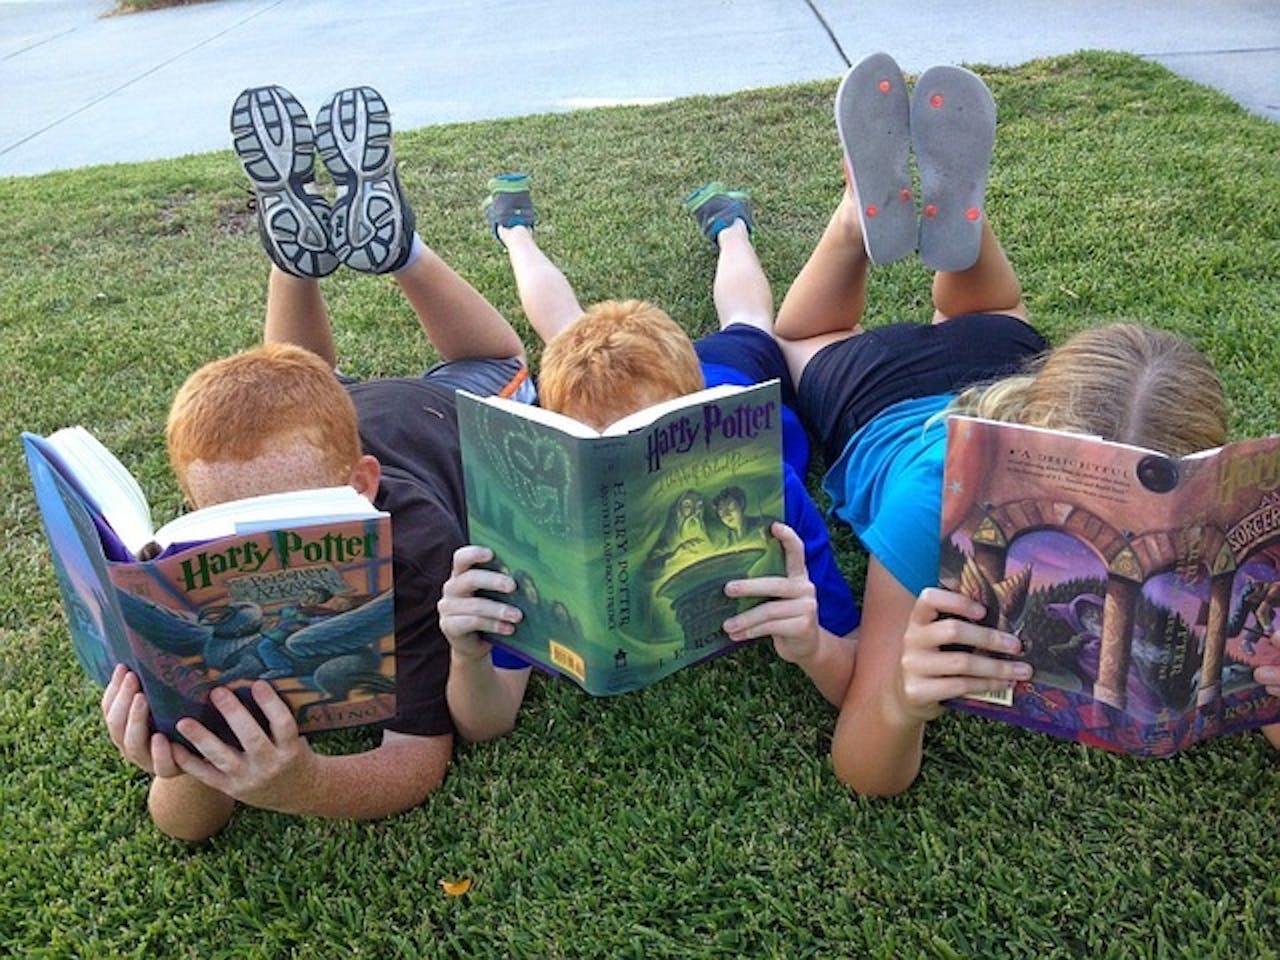 Drie kinderen liggen op het gras Harry Potter-boeken te lezen.